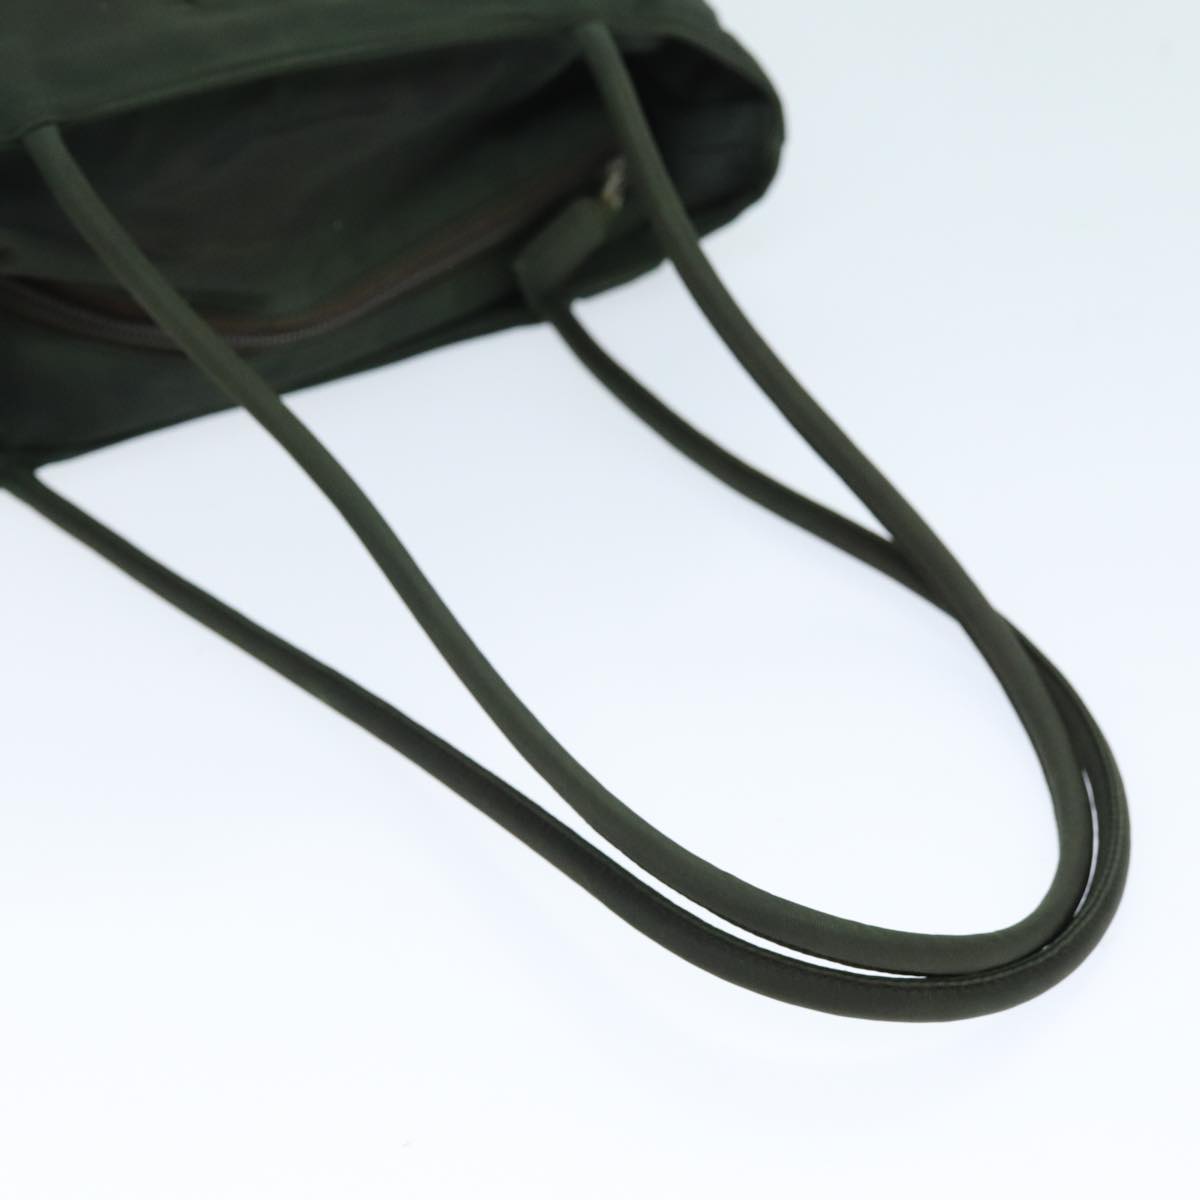 PRADA Shoulder Bag Nylon Khaki Auth yk12281